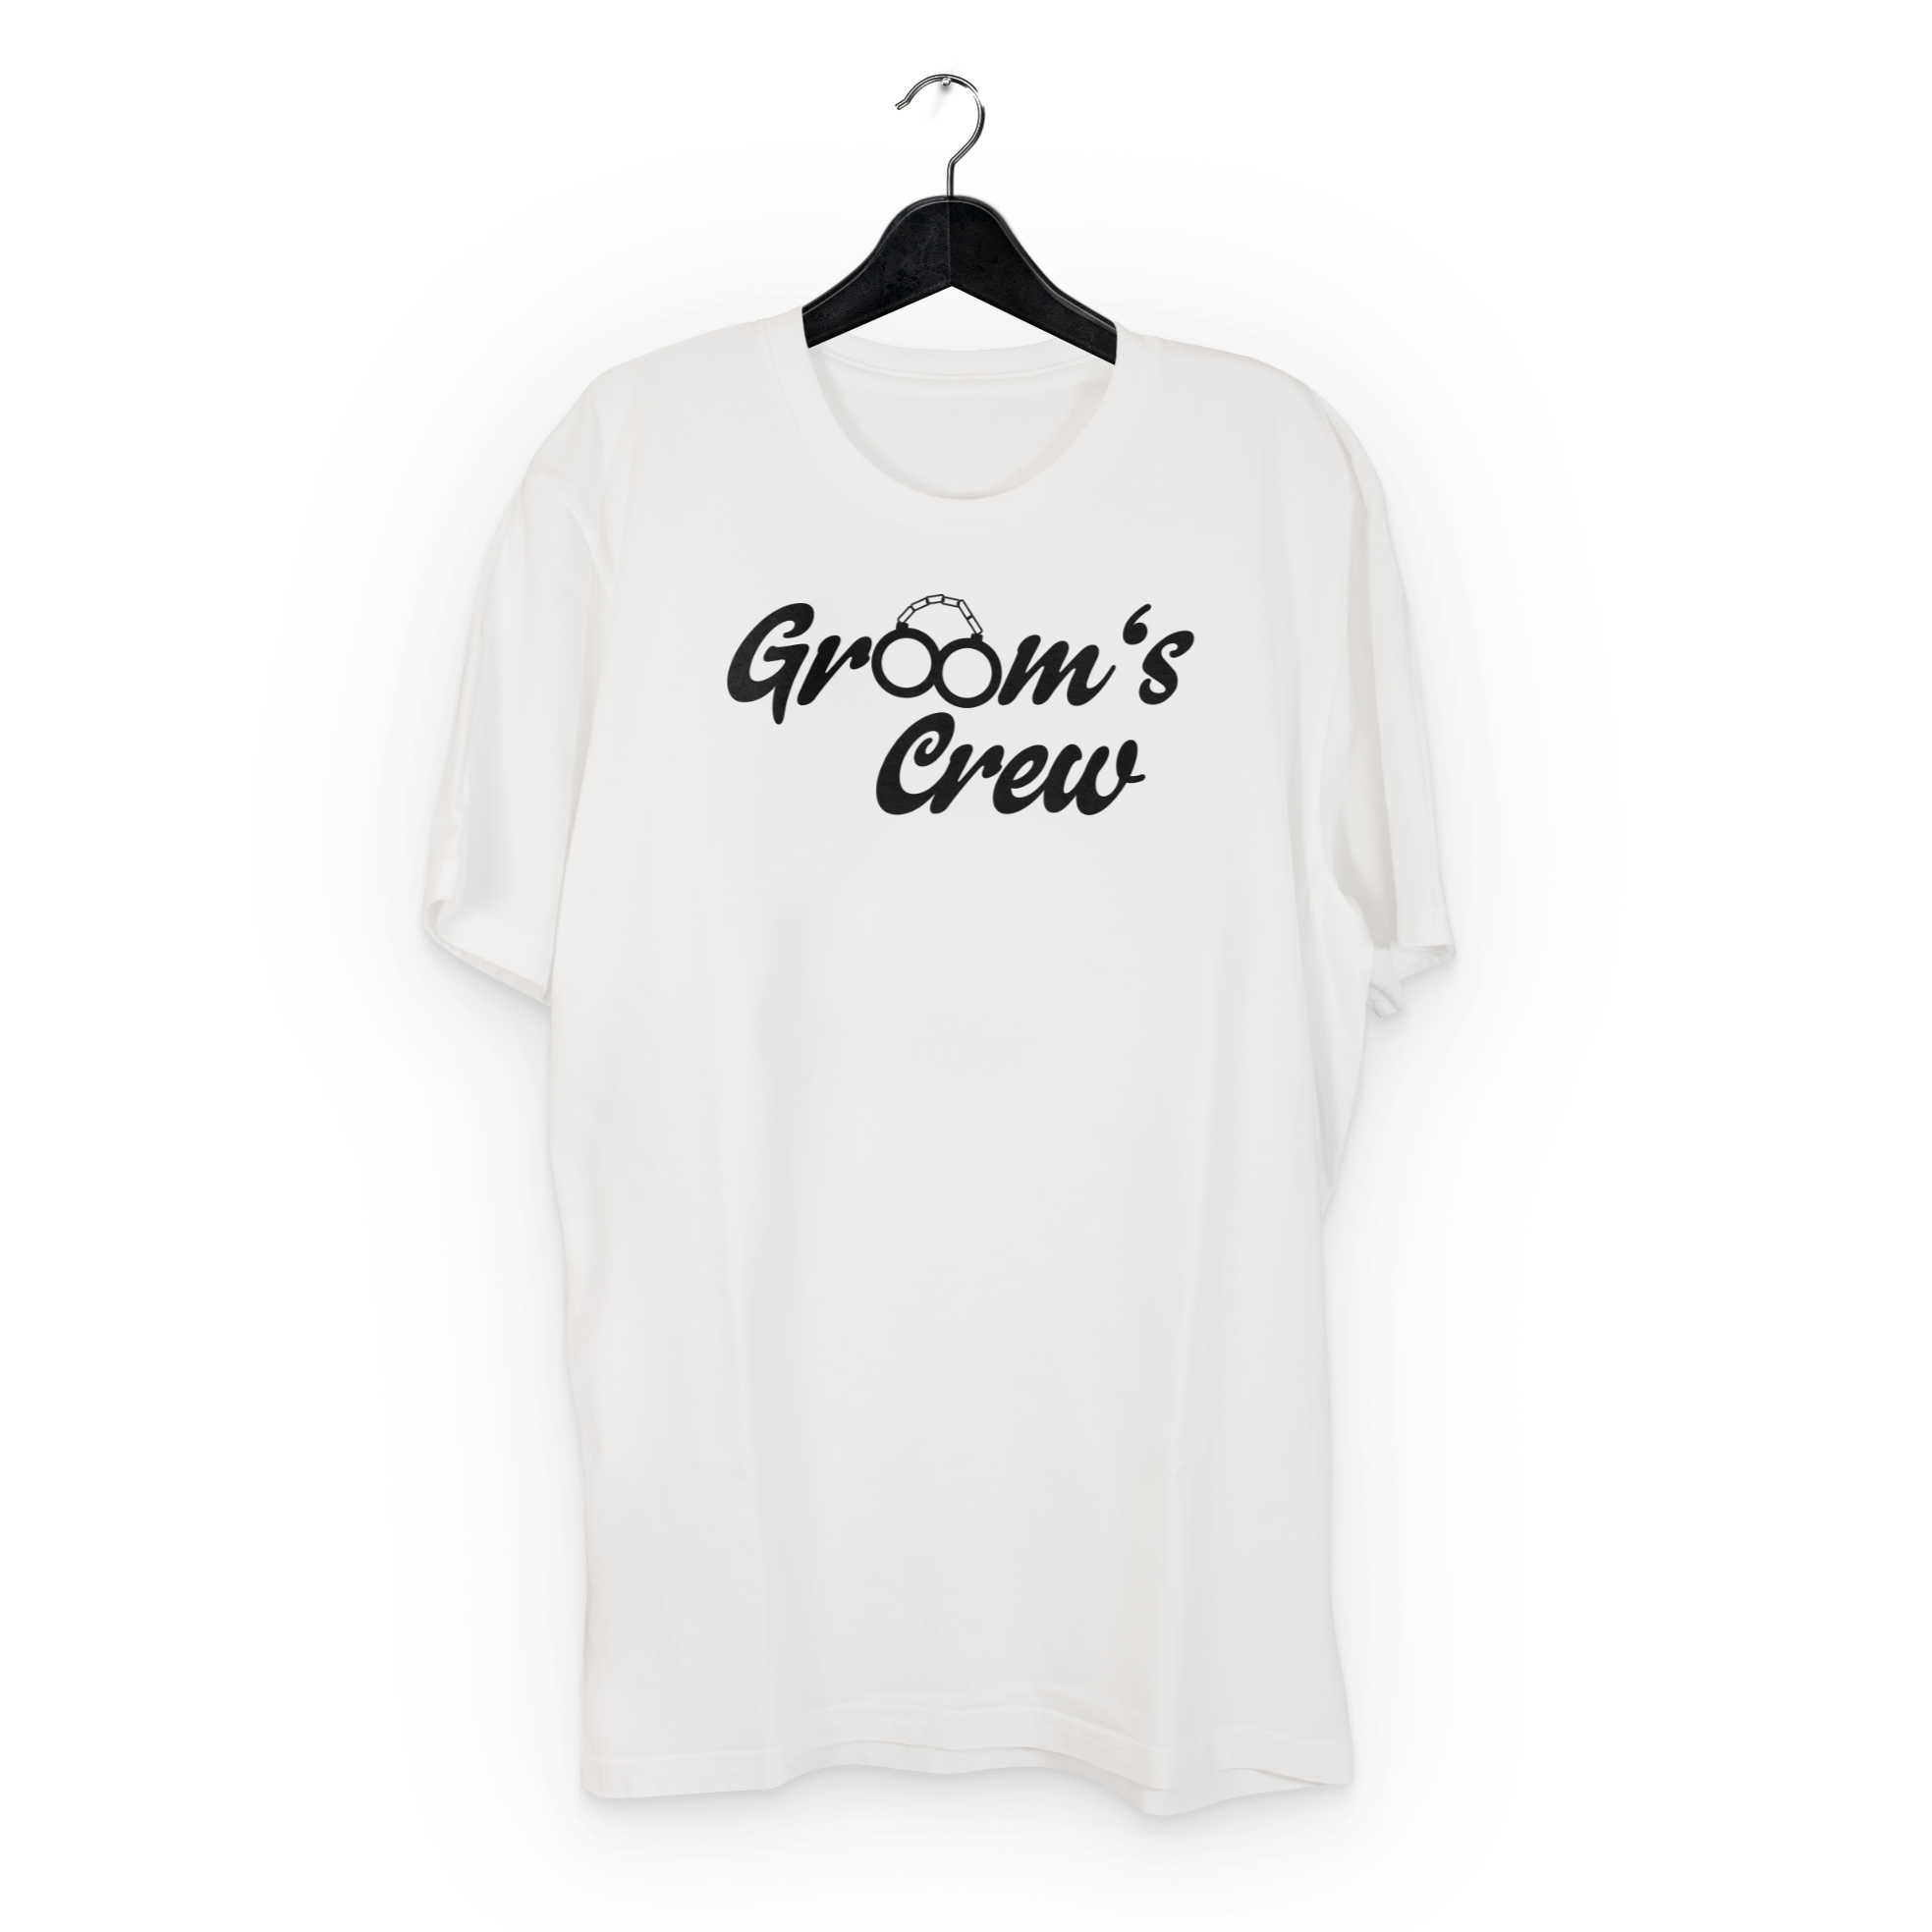 Groom's Crew Shirt